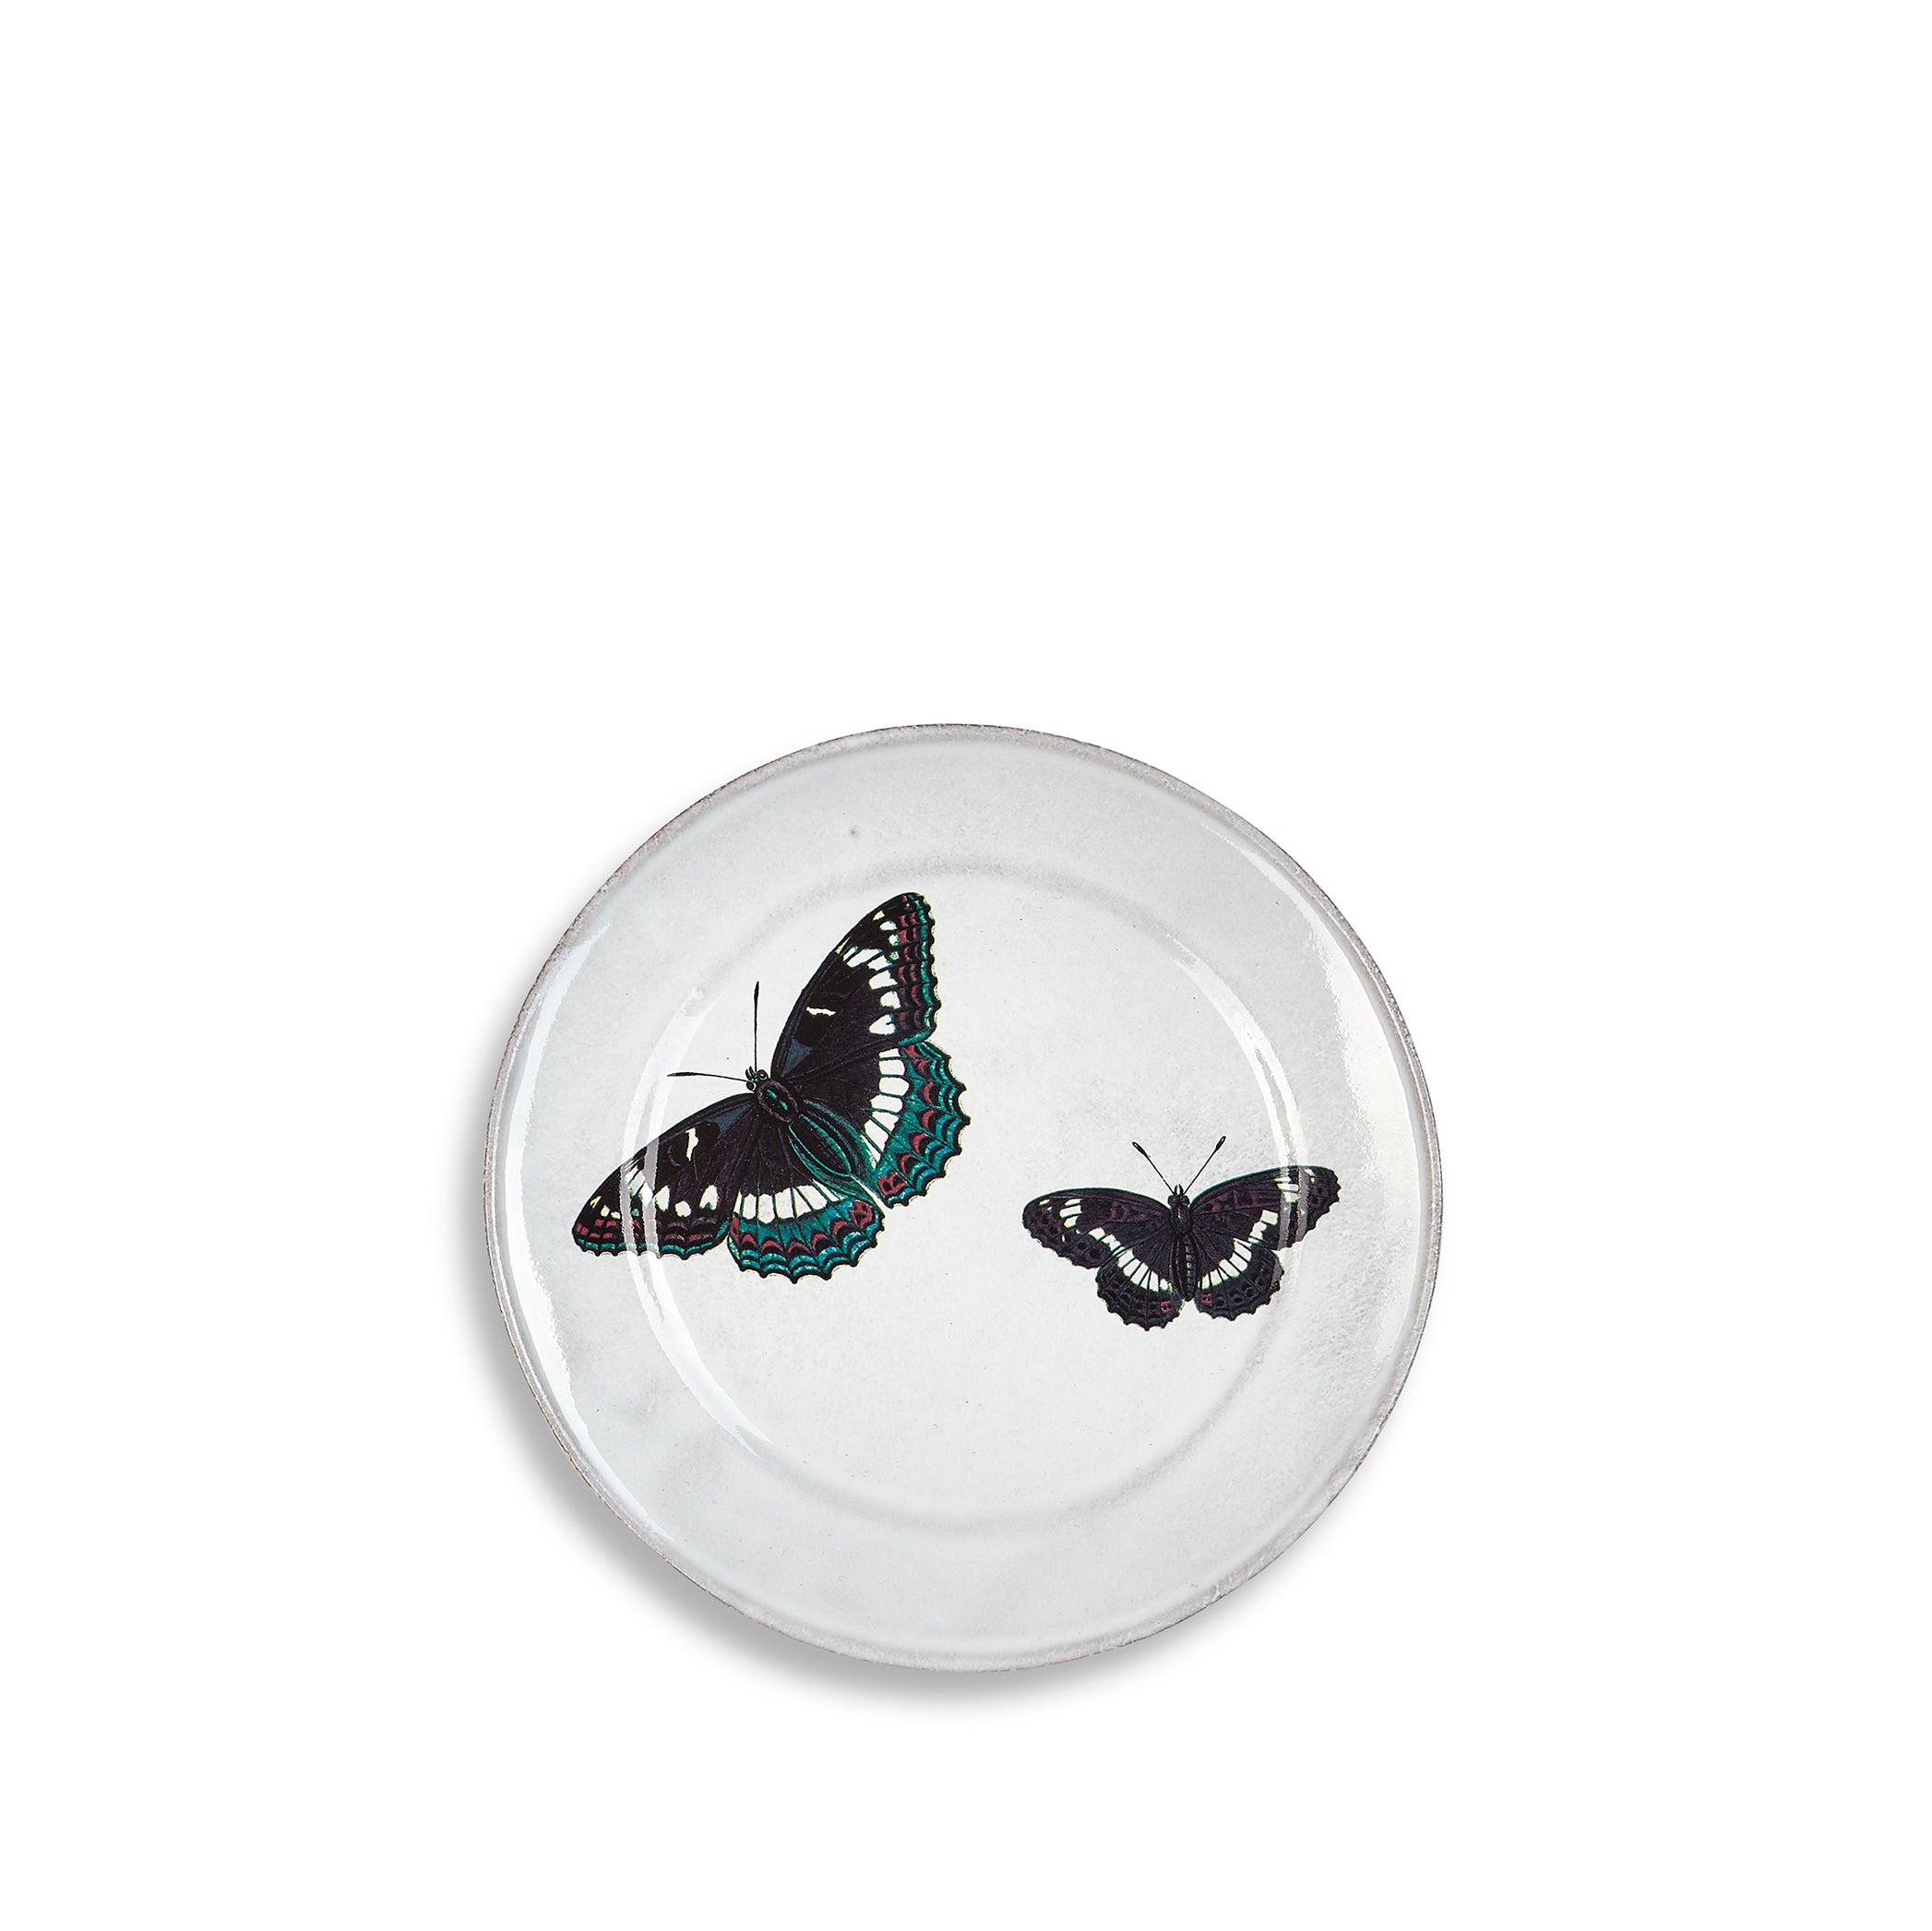 Two Flying Butterflies Plate by Astier de Villatte, 19cm